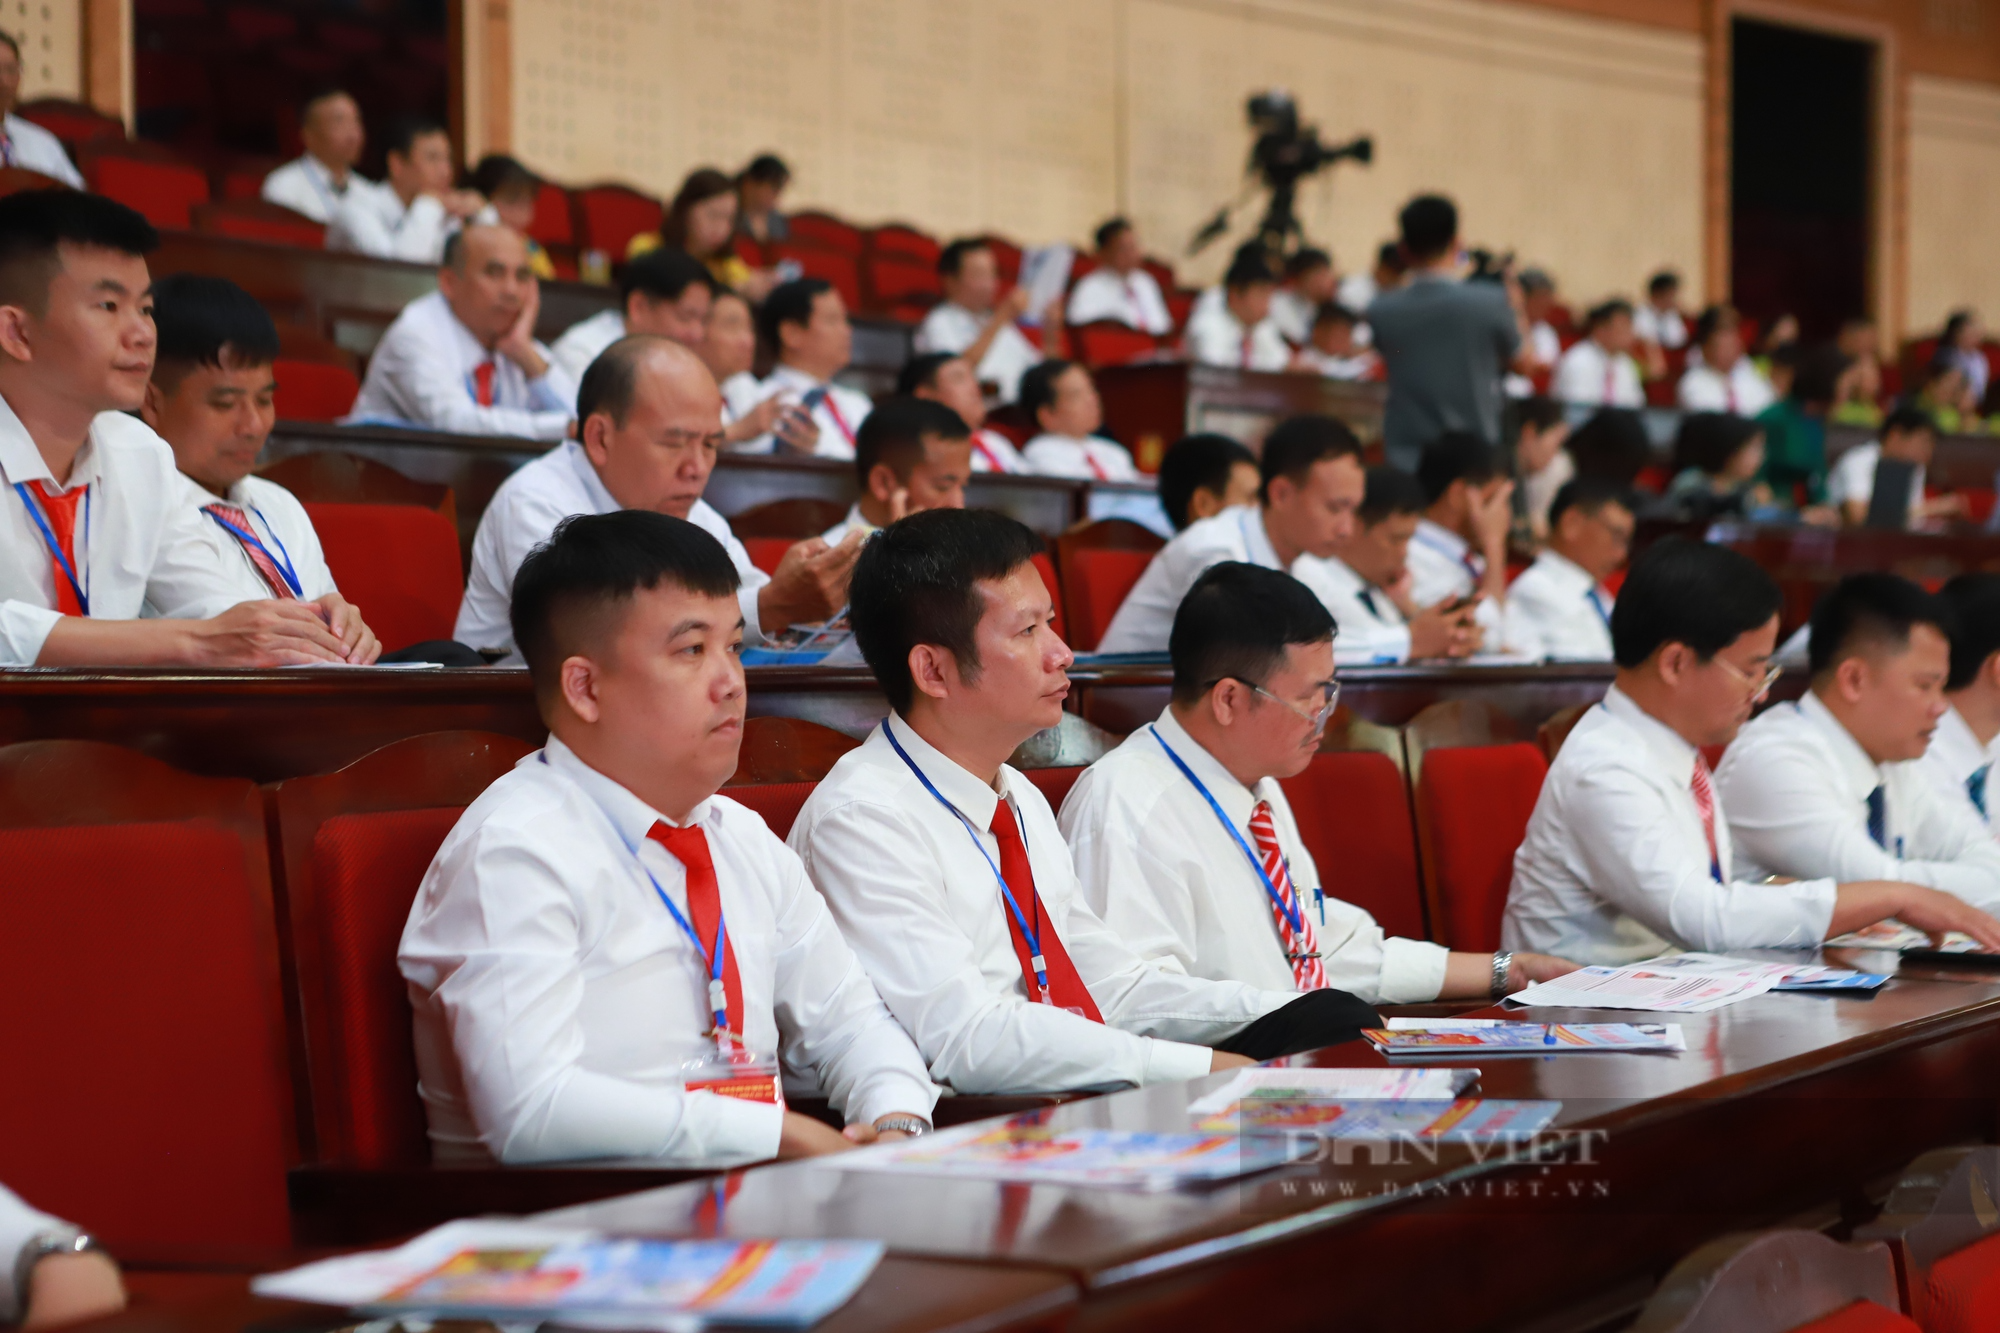 Phó chủ tịch Hội NDVN Nguyễn Xuân Định gợi mở 5 vấn đề tại Đại hội đại biểu Hội Nông dân tỉnh Bắc Ninh - Ảnh 3.